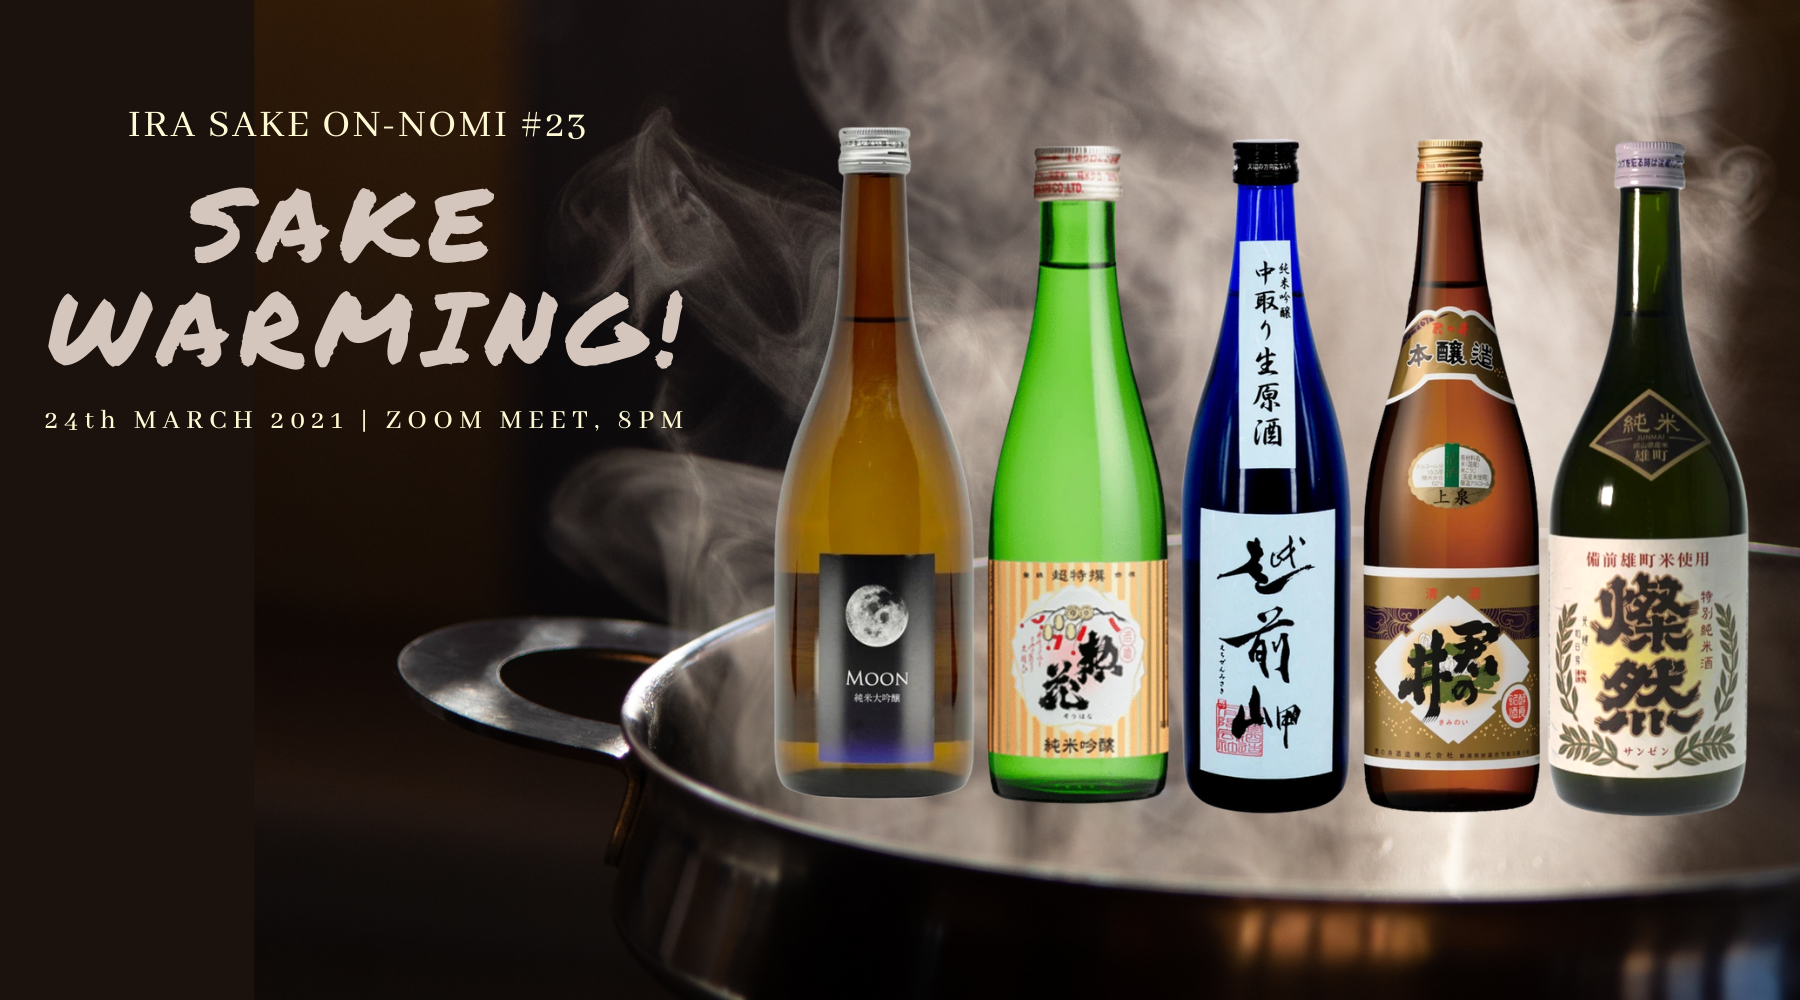 "Sake Warming"! Onnomi #23